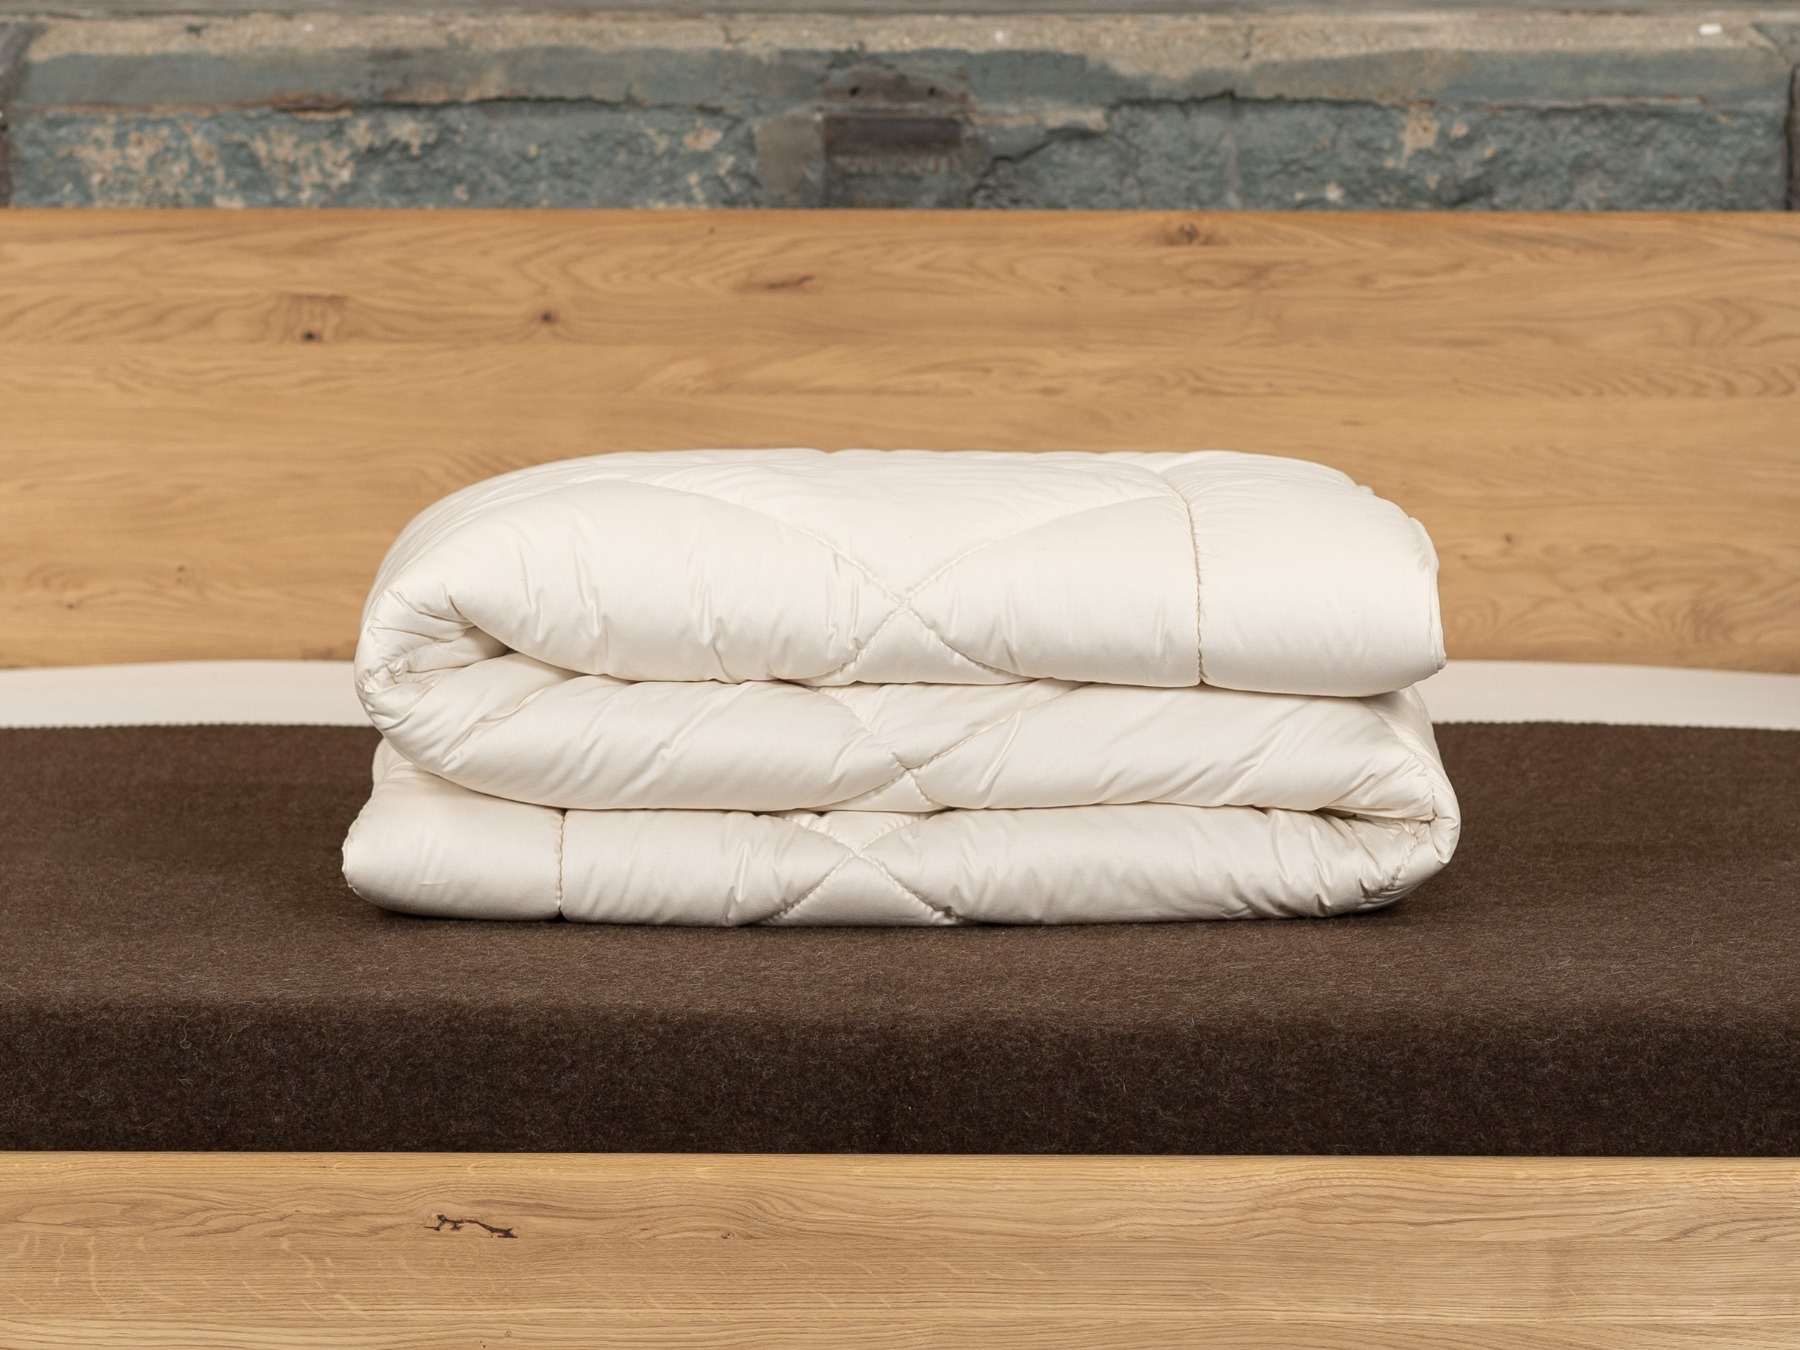 Für die kalte Jahreszeit: 2 leichte Decken miteinander versteppt.